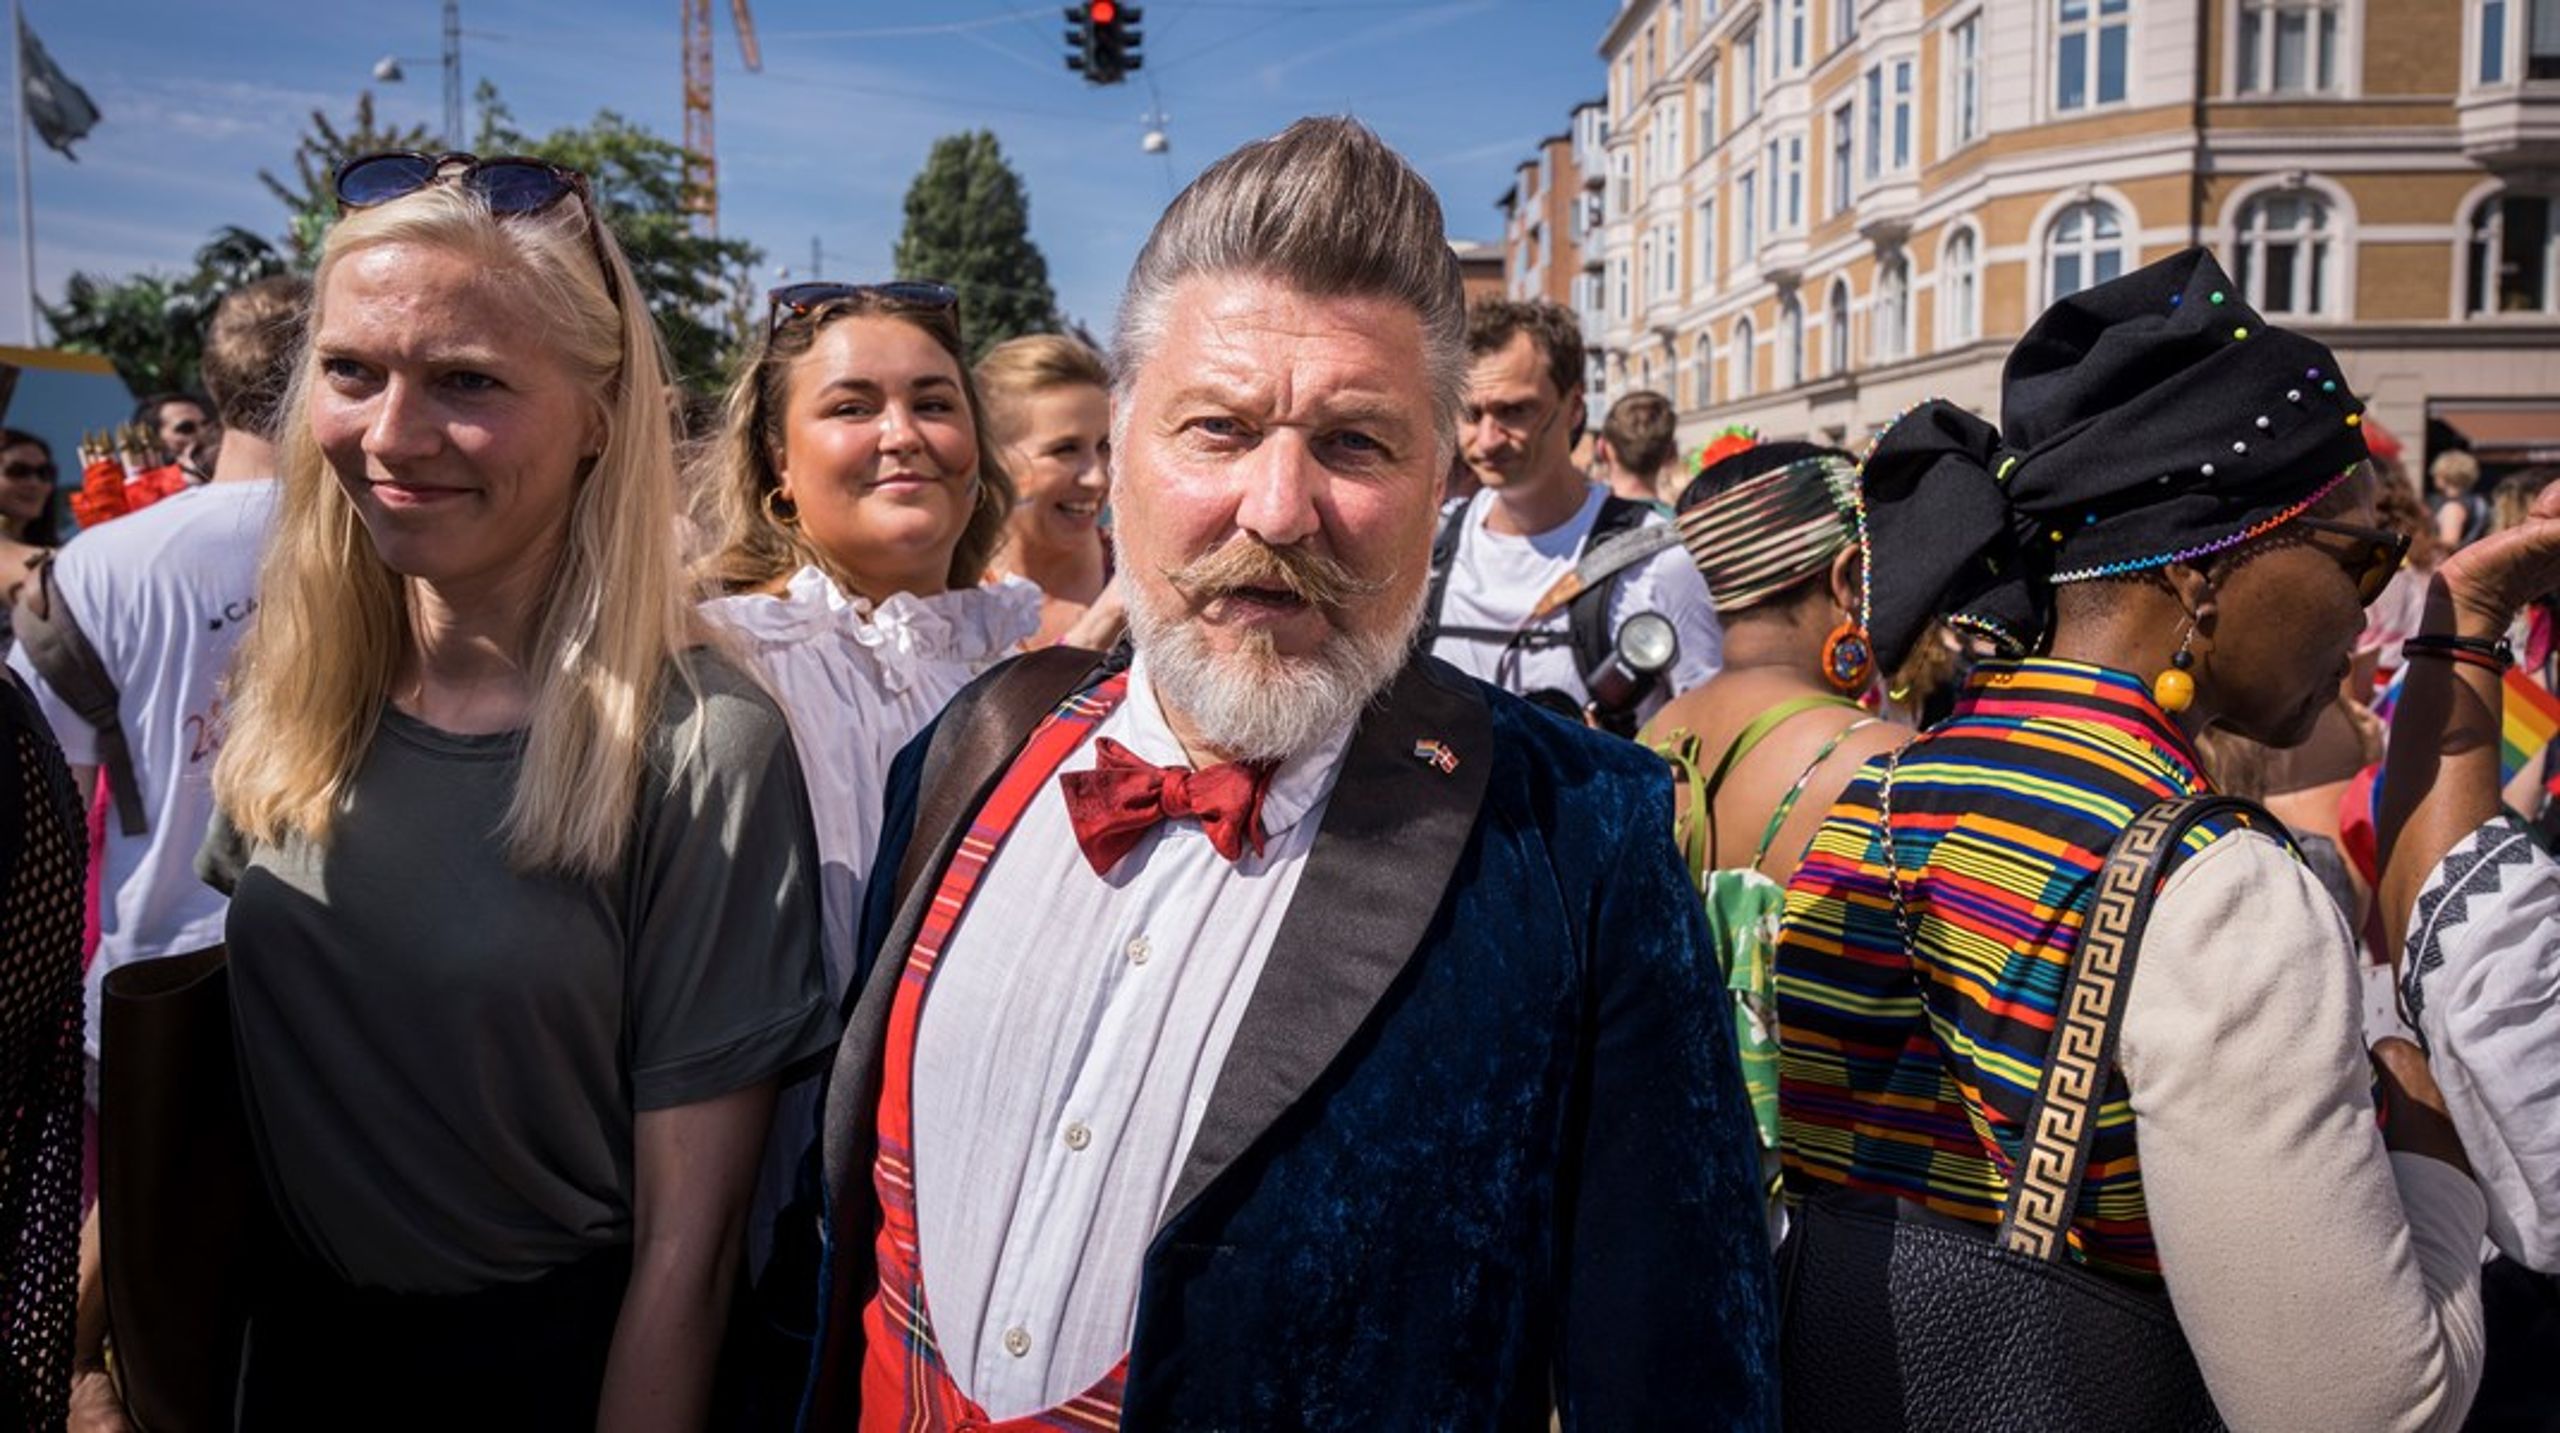 Lars Henriksen har modtaget kritik for sine udmeldinger om konflikten i Israel og Palæstina. Nu trækker han sig som politisk forperson og bestyrelsesmedlem i Copenhagen Pride.